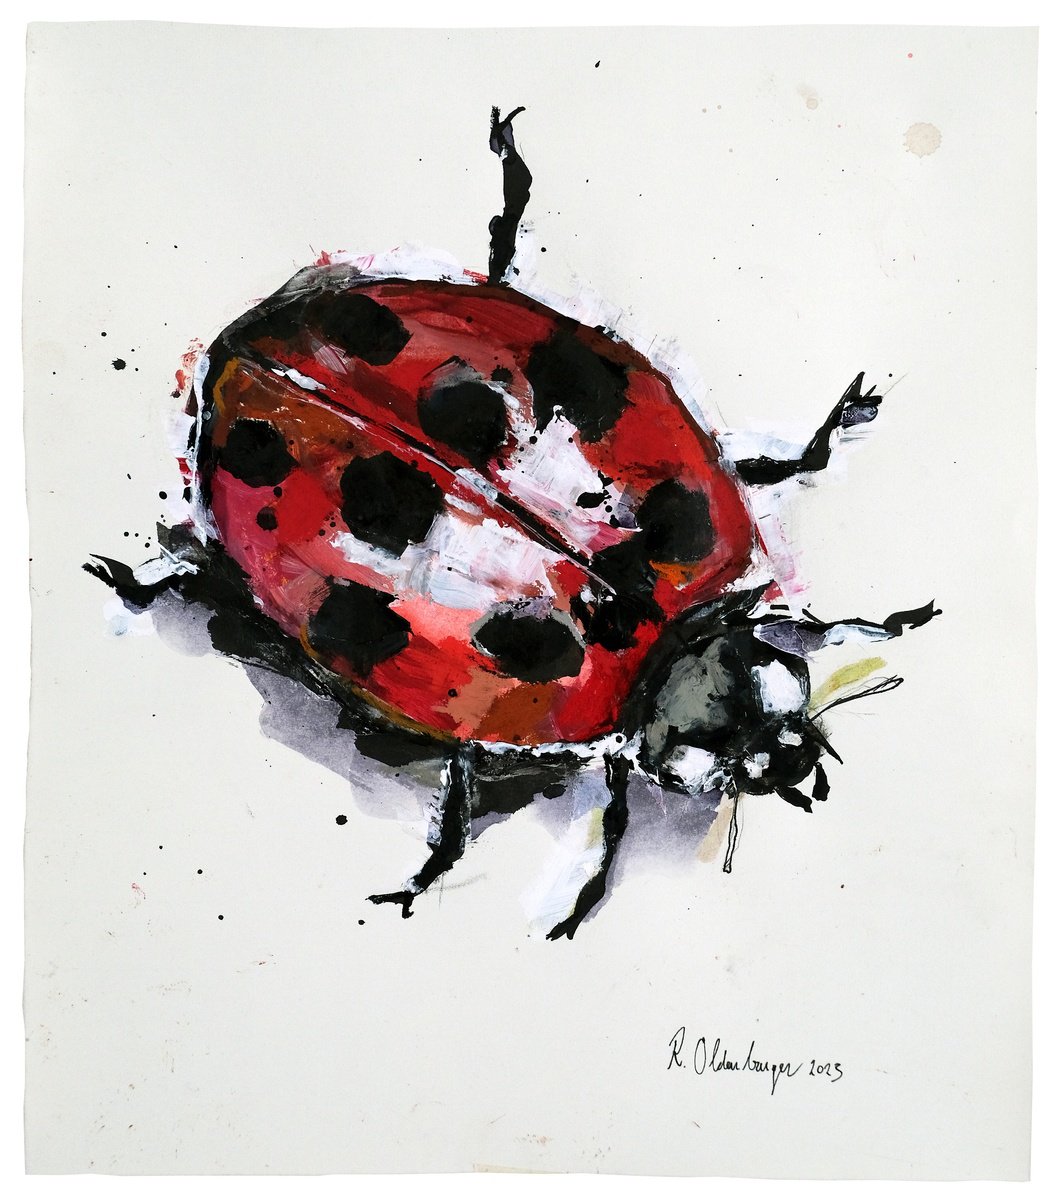 Ladybug by Reinder Oldenburger